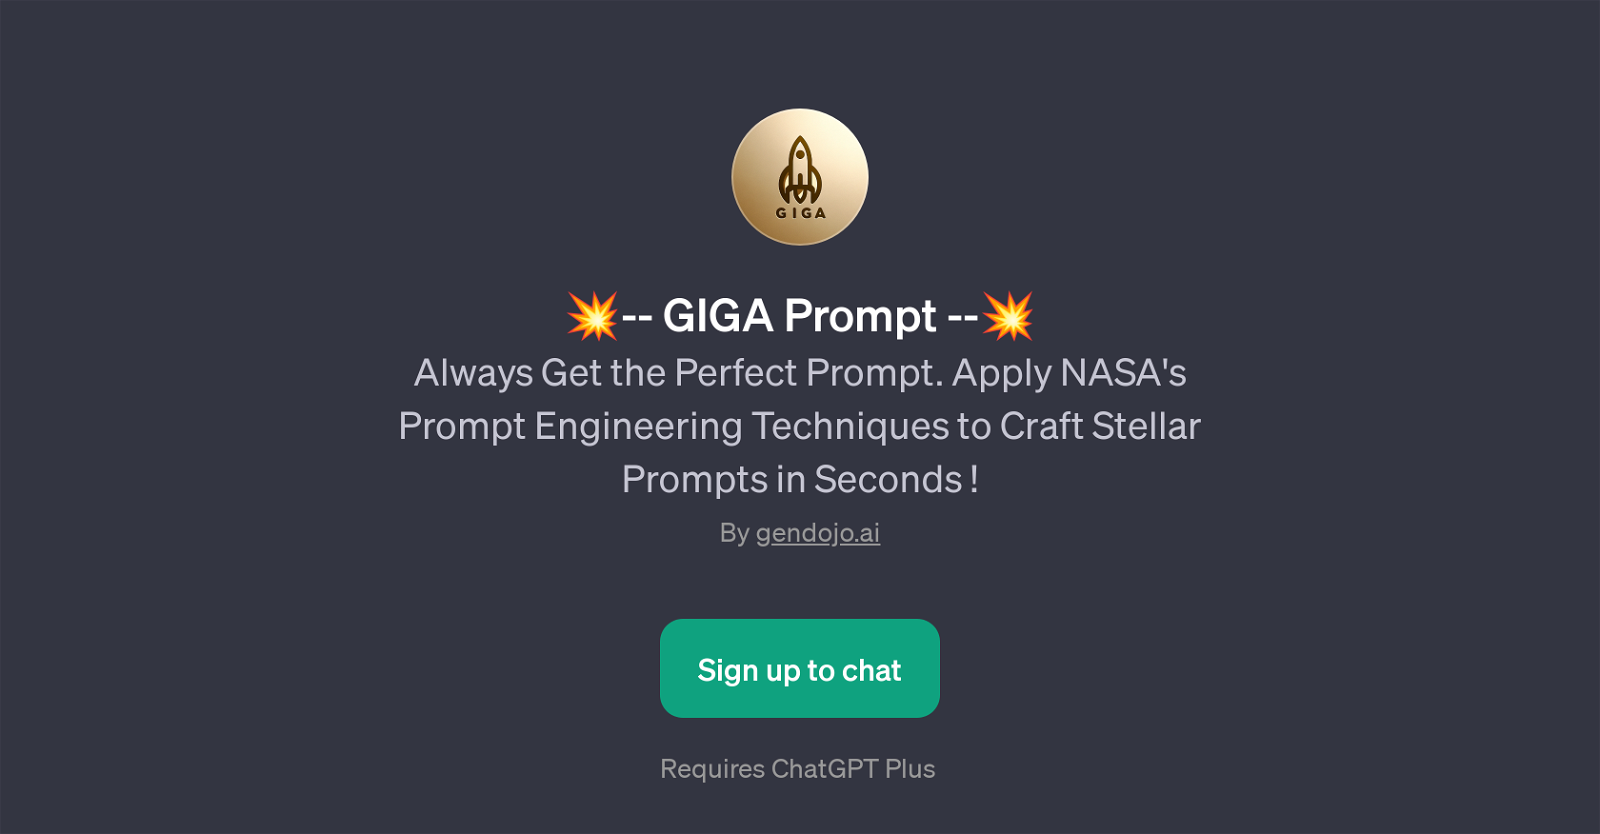 GIGA Prompt website